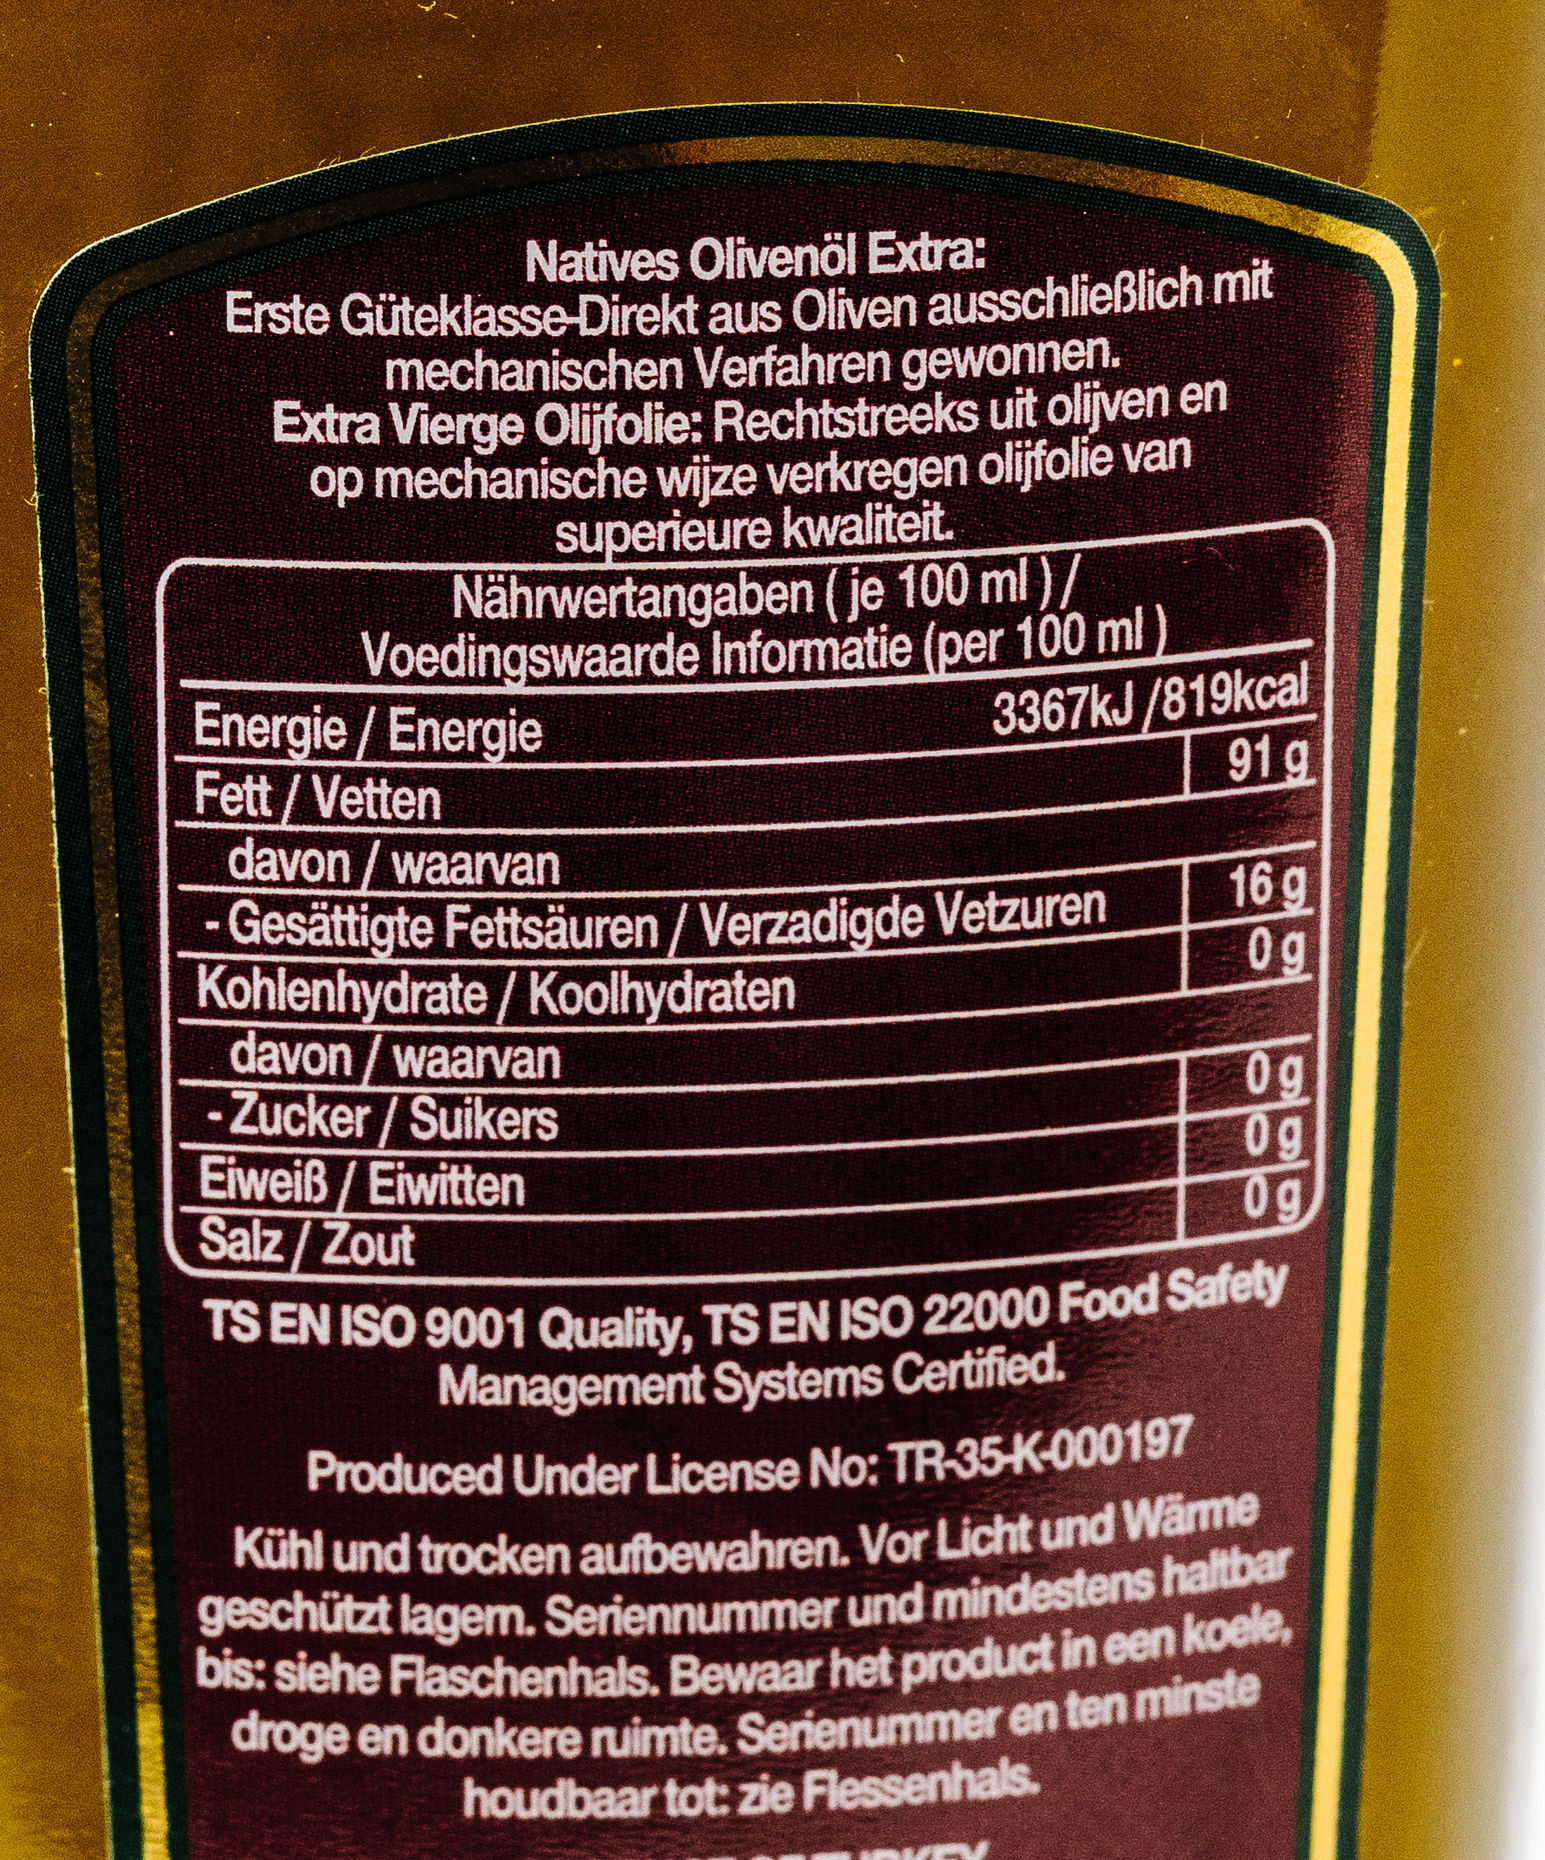 Kristal Extra Virgin Olive Oil